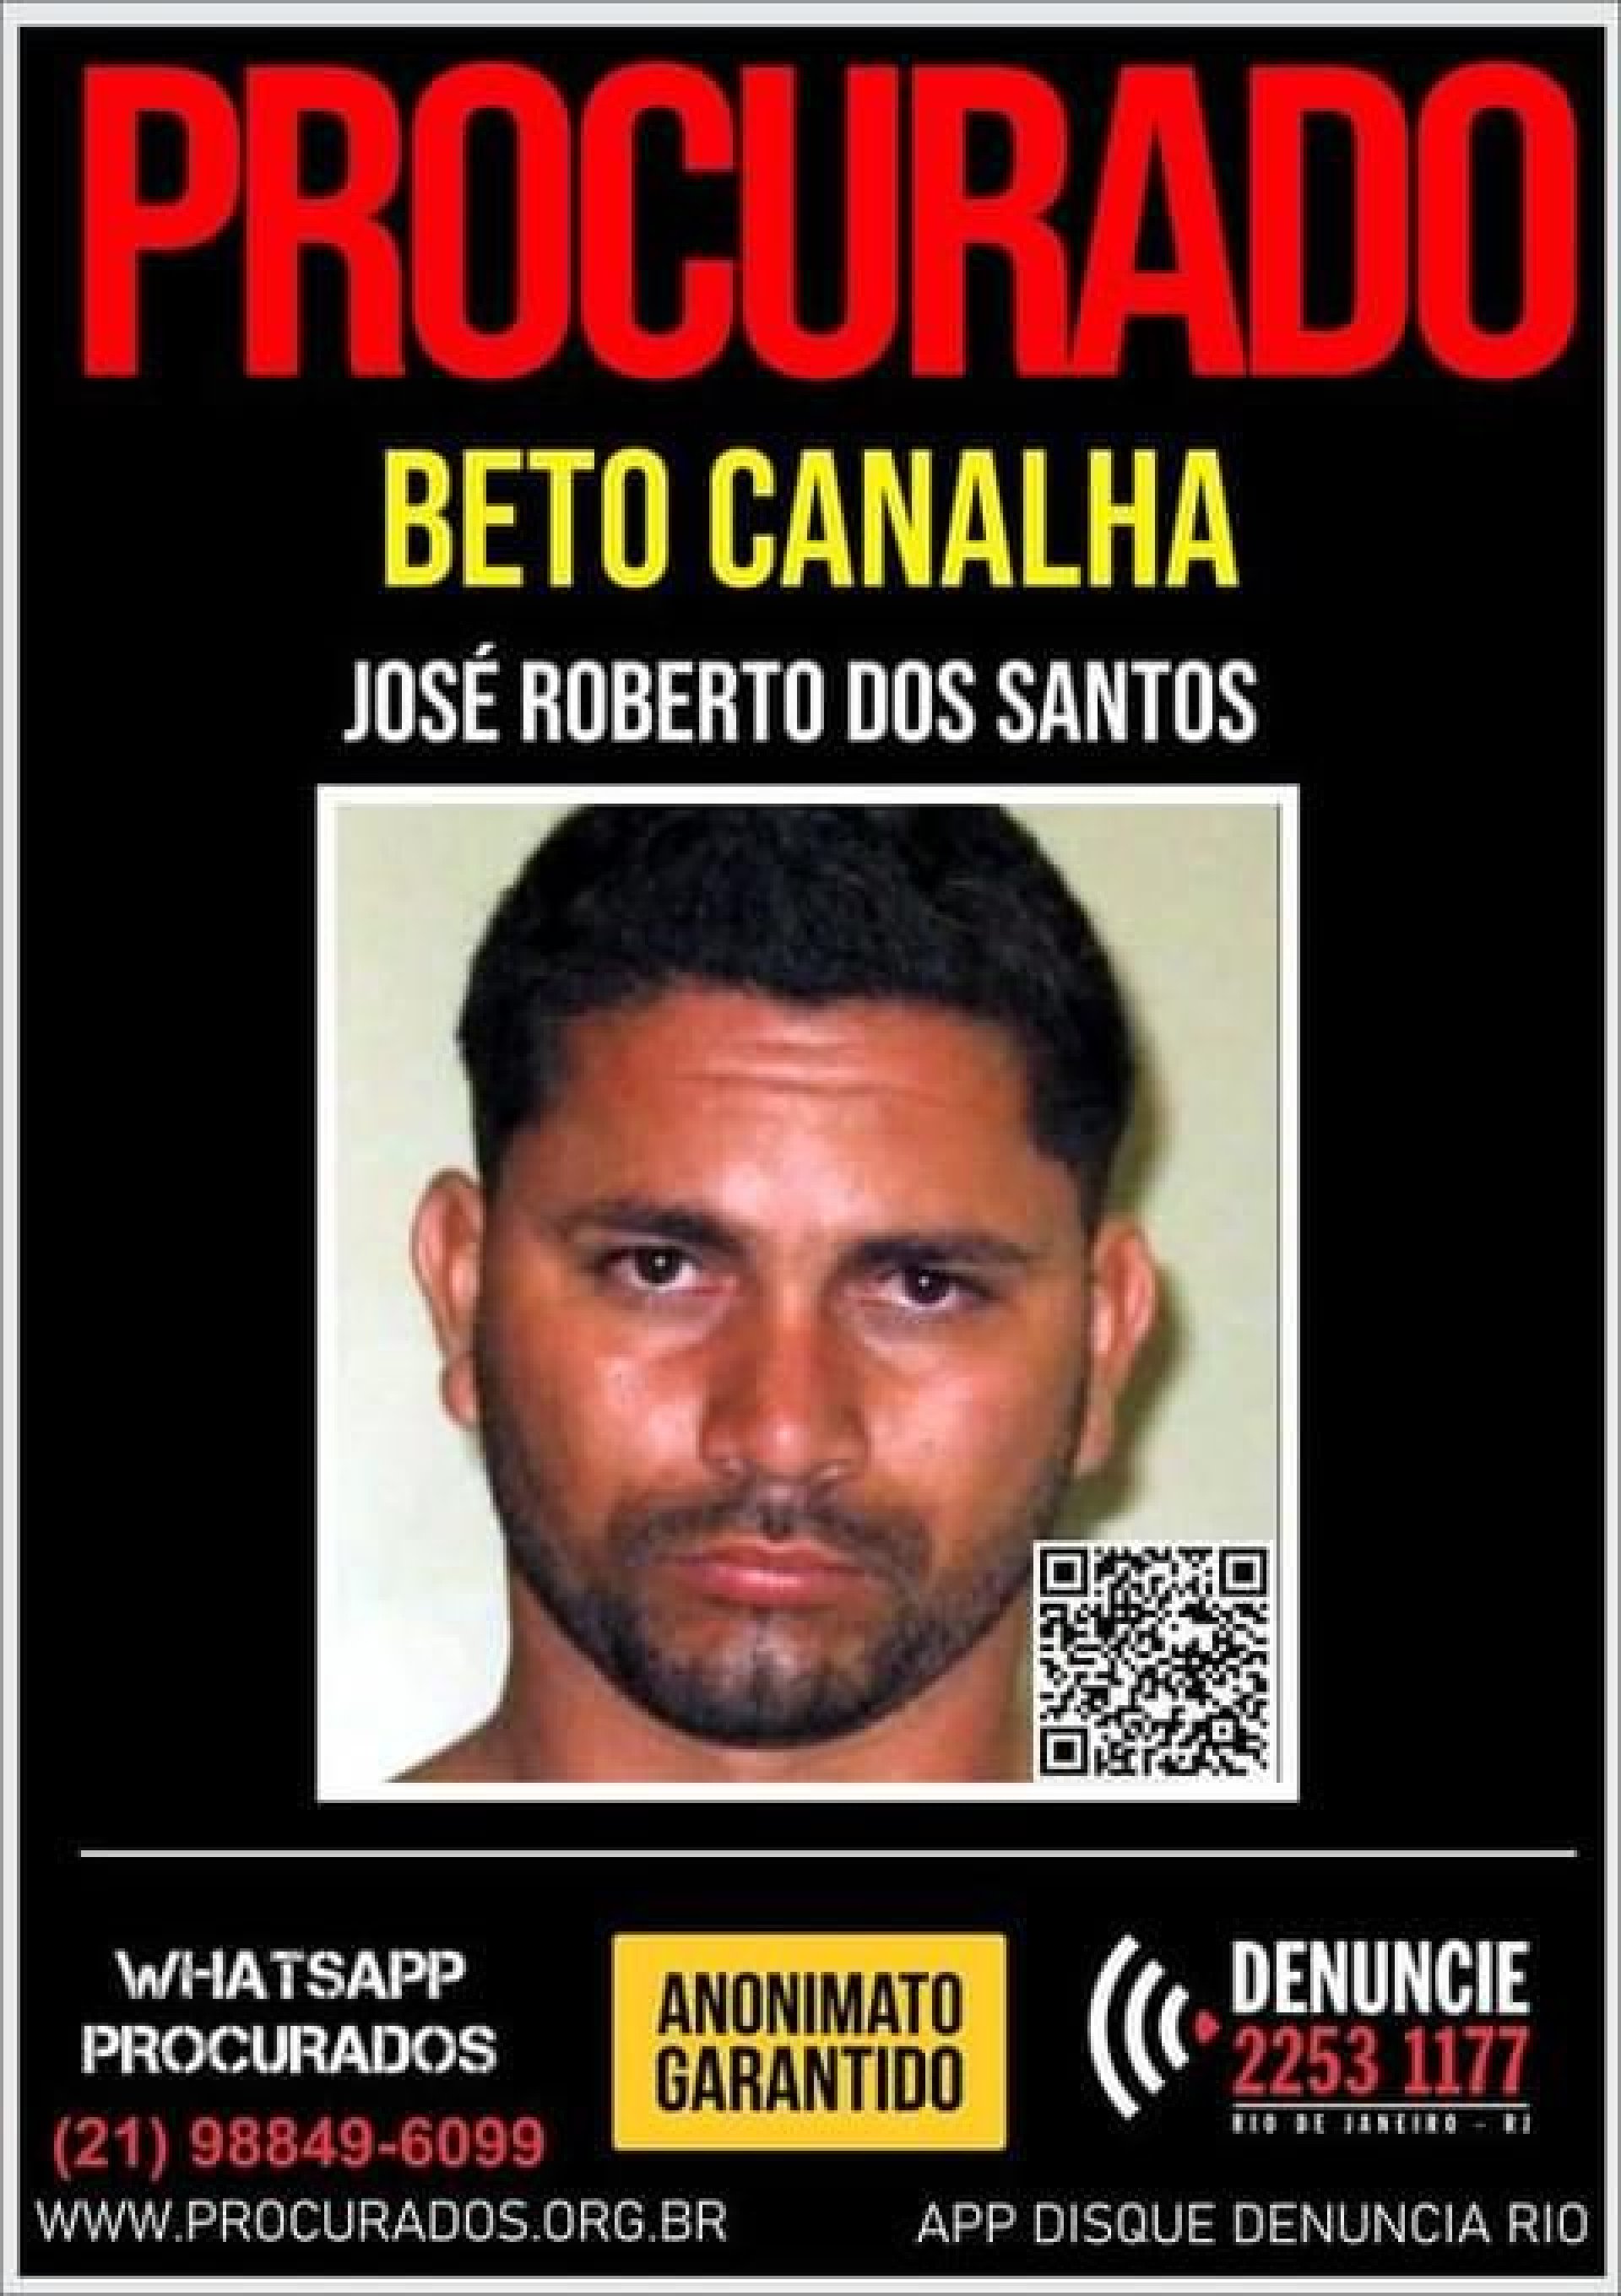 José Roberto Dos Santos, de 37 anos, possuía três mandados de prisão em aberto, que foram cumpridos durante o registro da ocorrência na 59ª DP (Duque de Caxias)